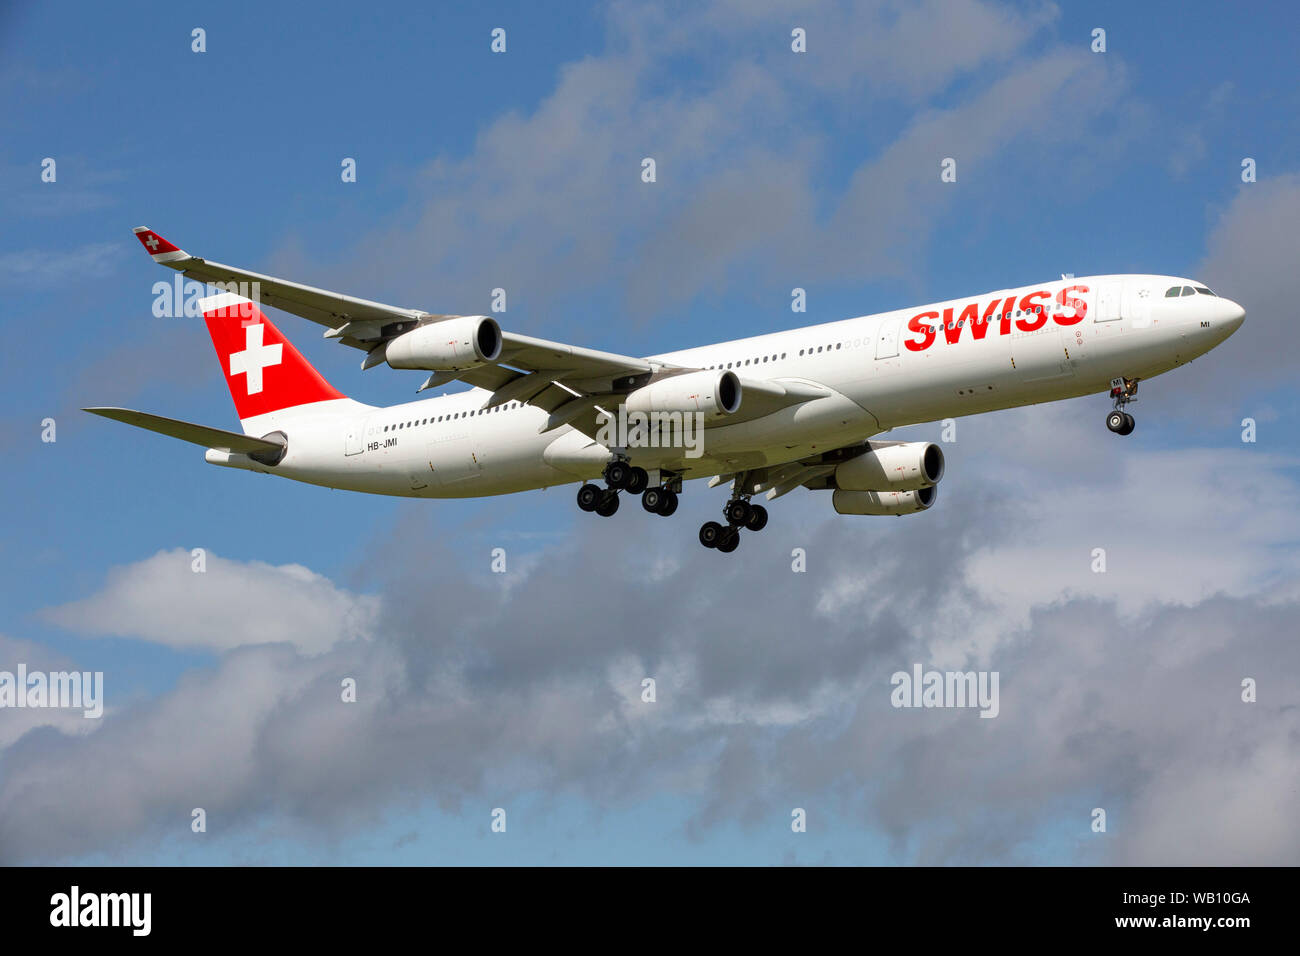 Airbus A340-313X, Reg: HB-JMI beim Anflug zum Flughafen Zurigo (ZRH). 15.08.2019 Foto Stock